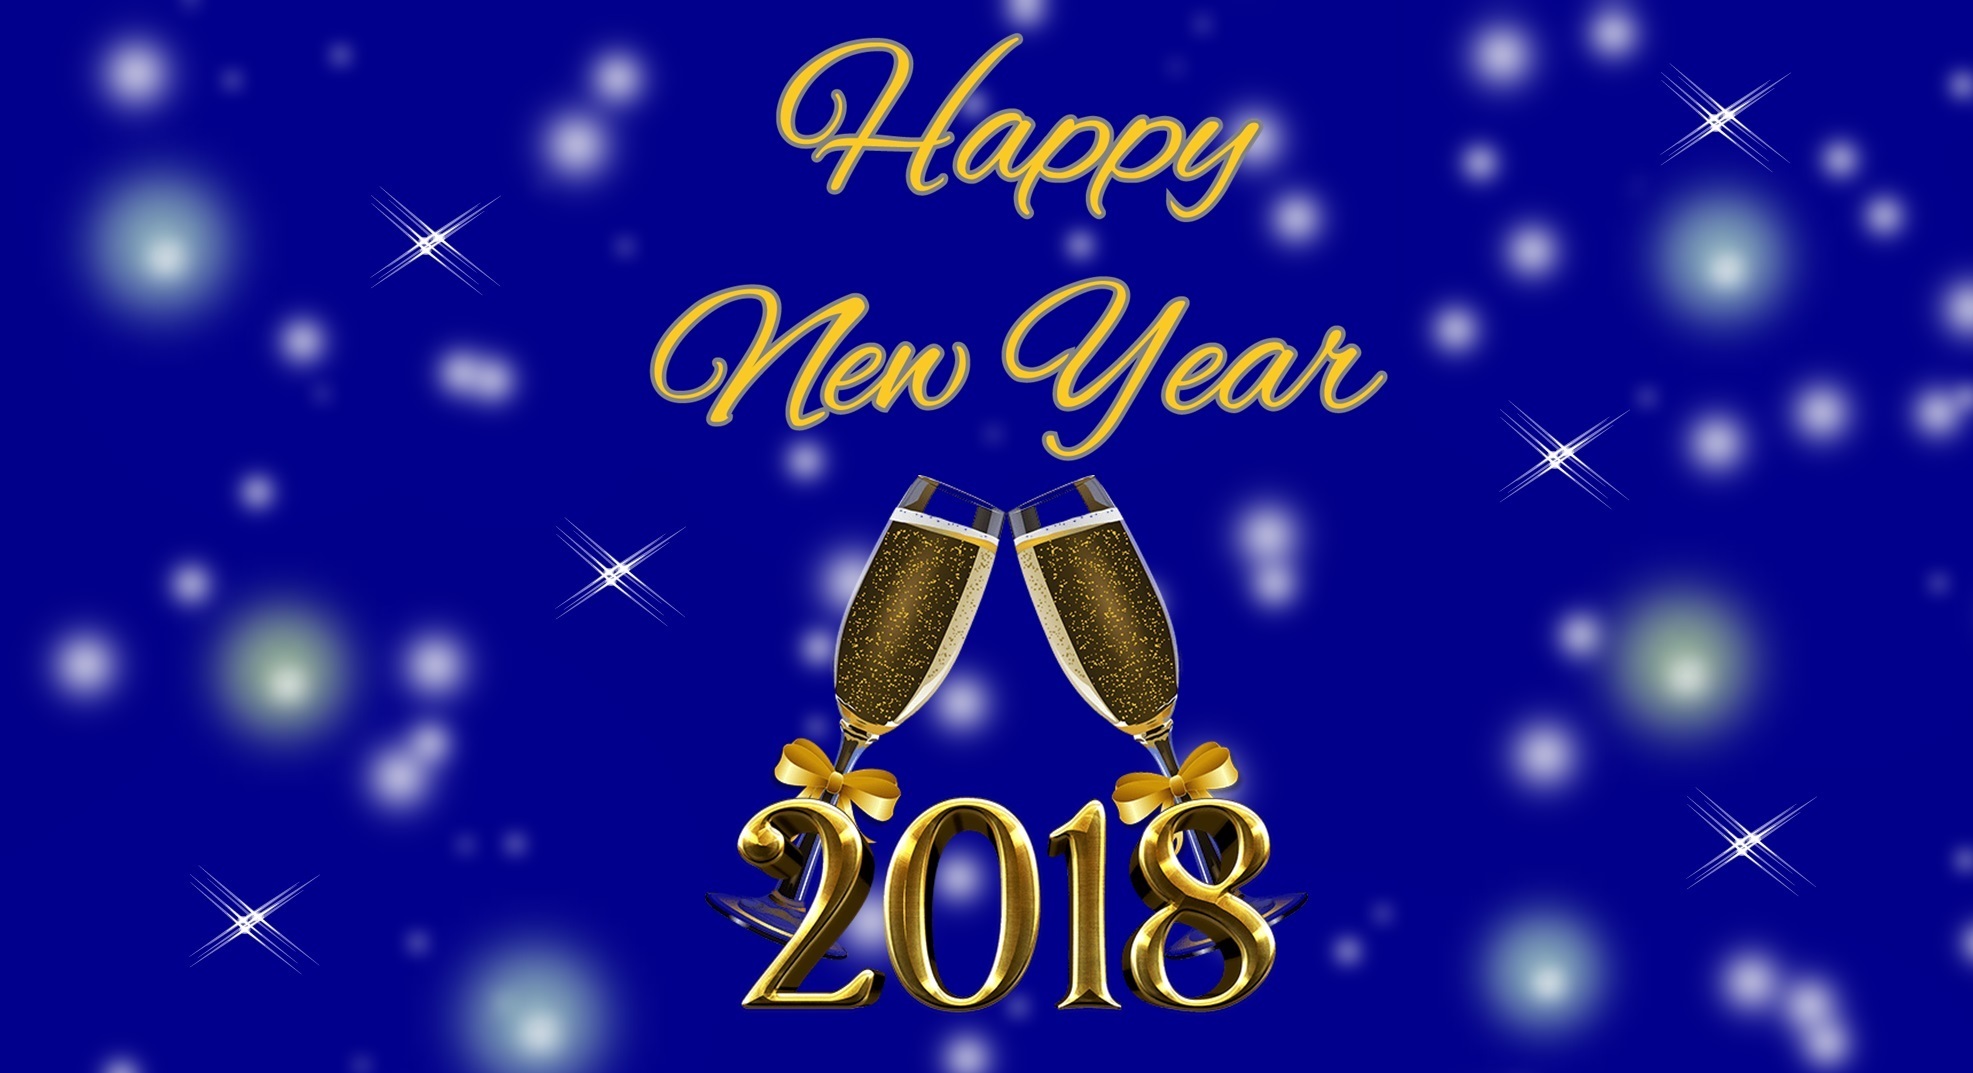 Szczęśliwego Nowego Roku 2018